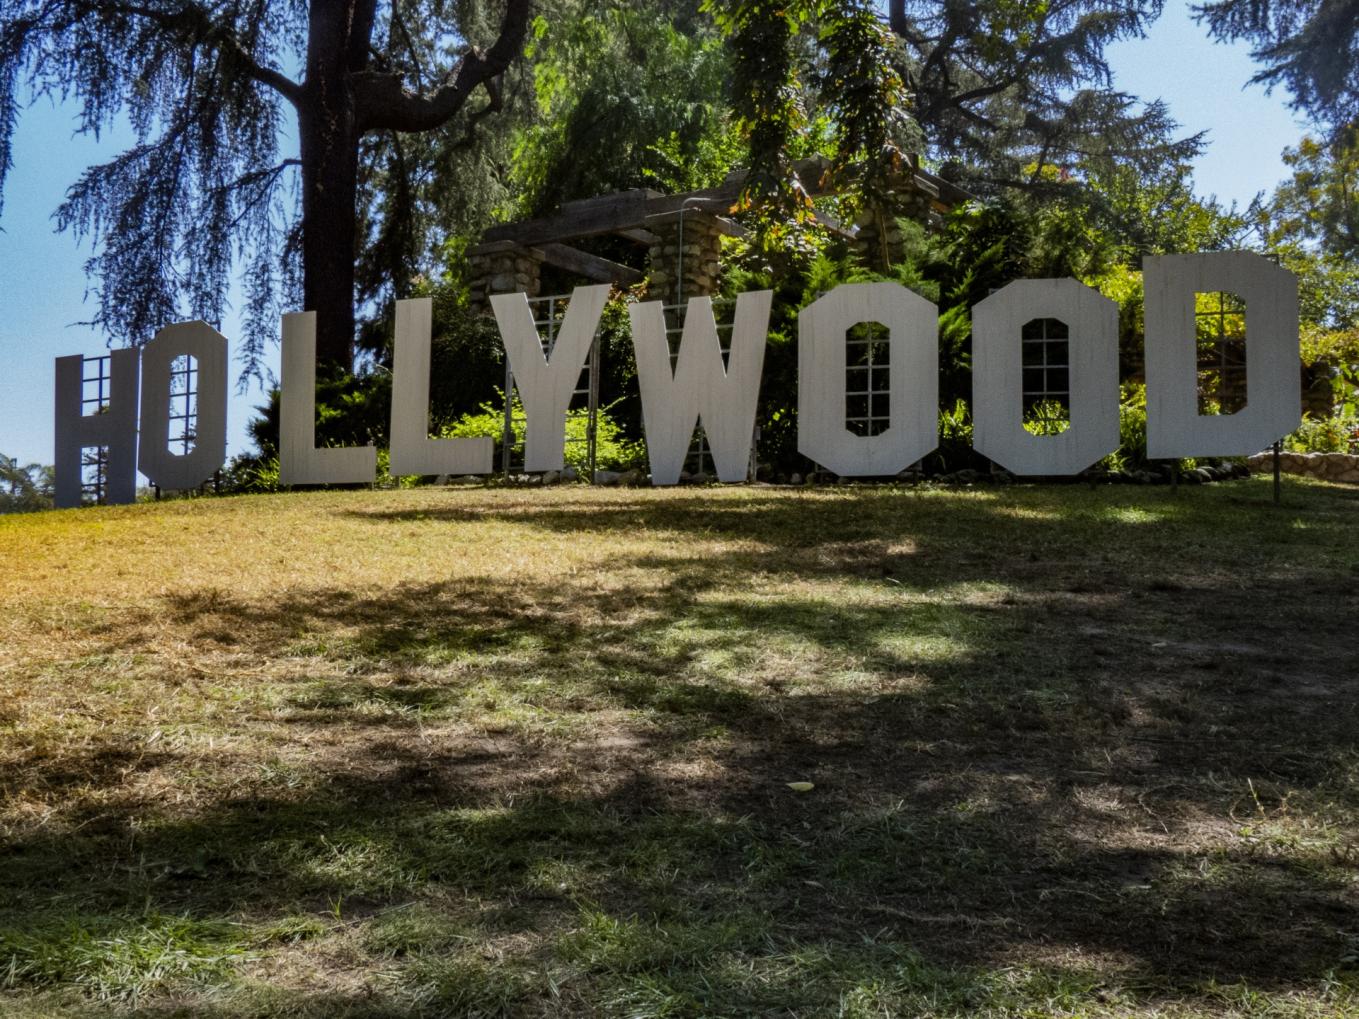 Quelles sont les caractéristiques les plus uniques des maisons de célébrités à Hollywood ?